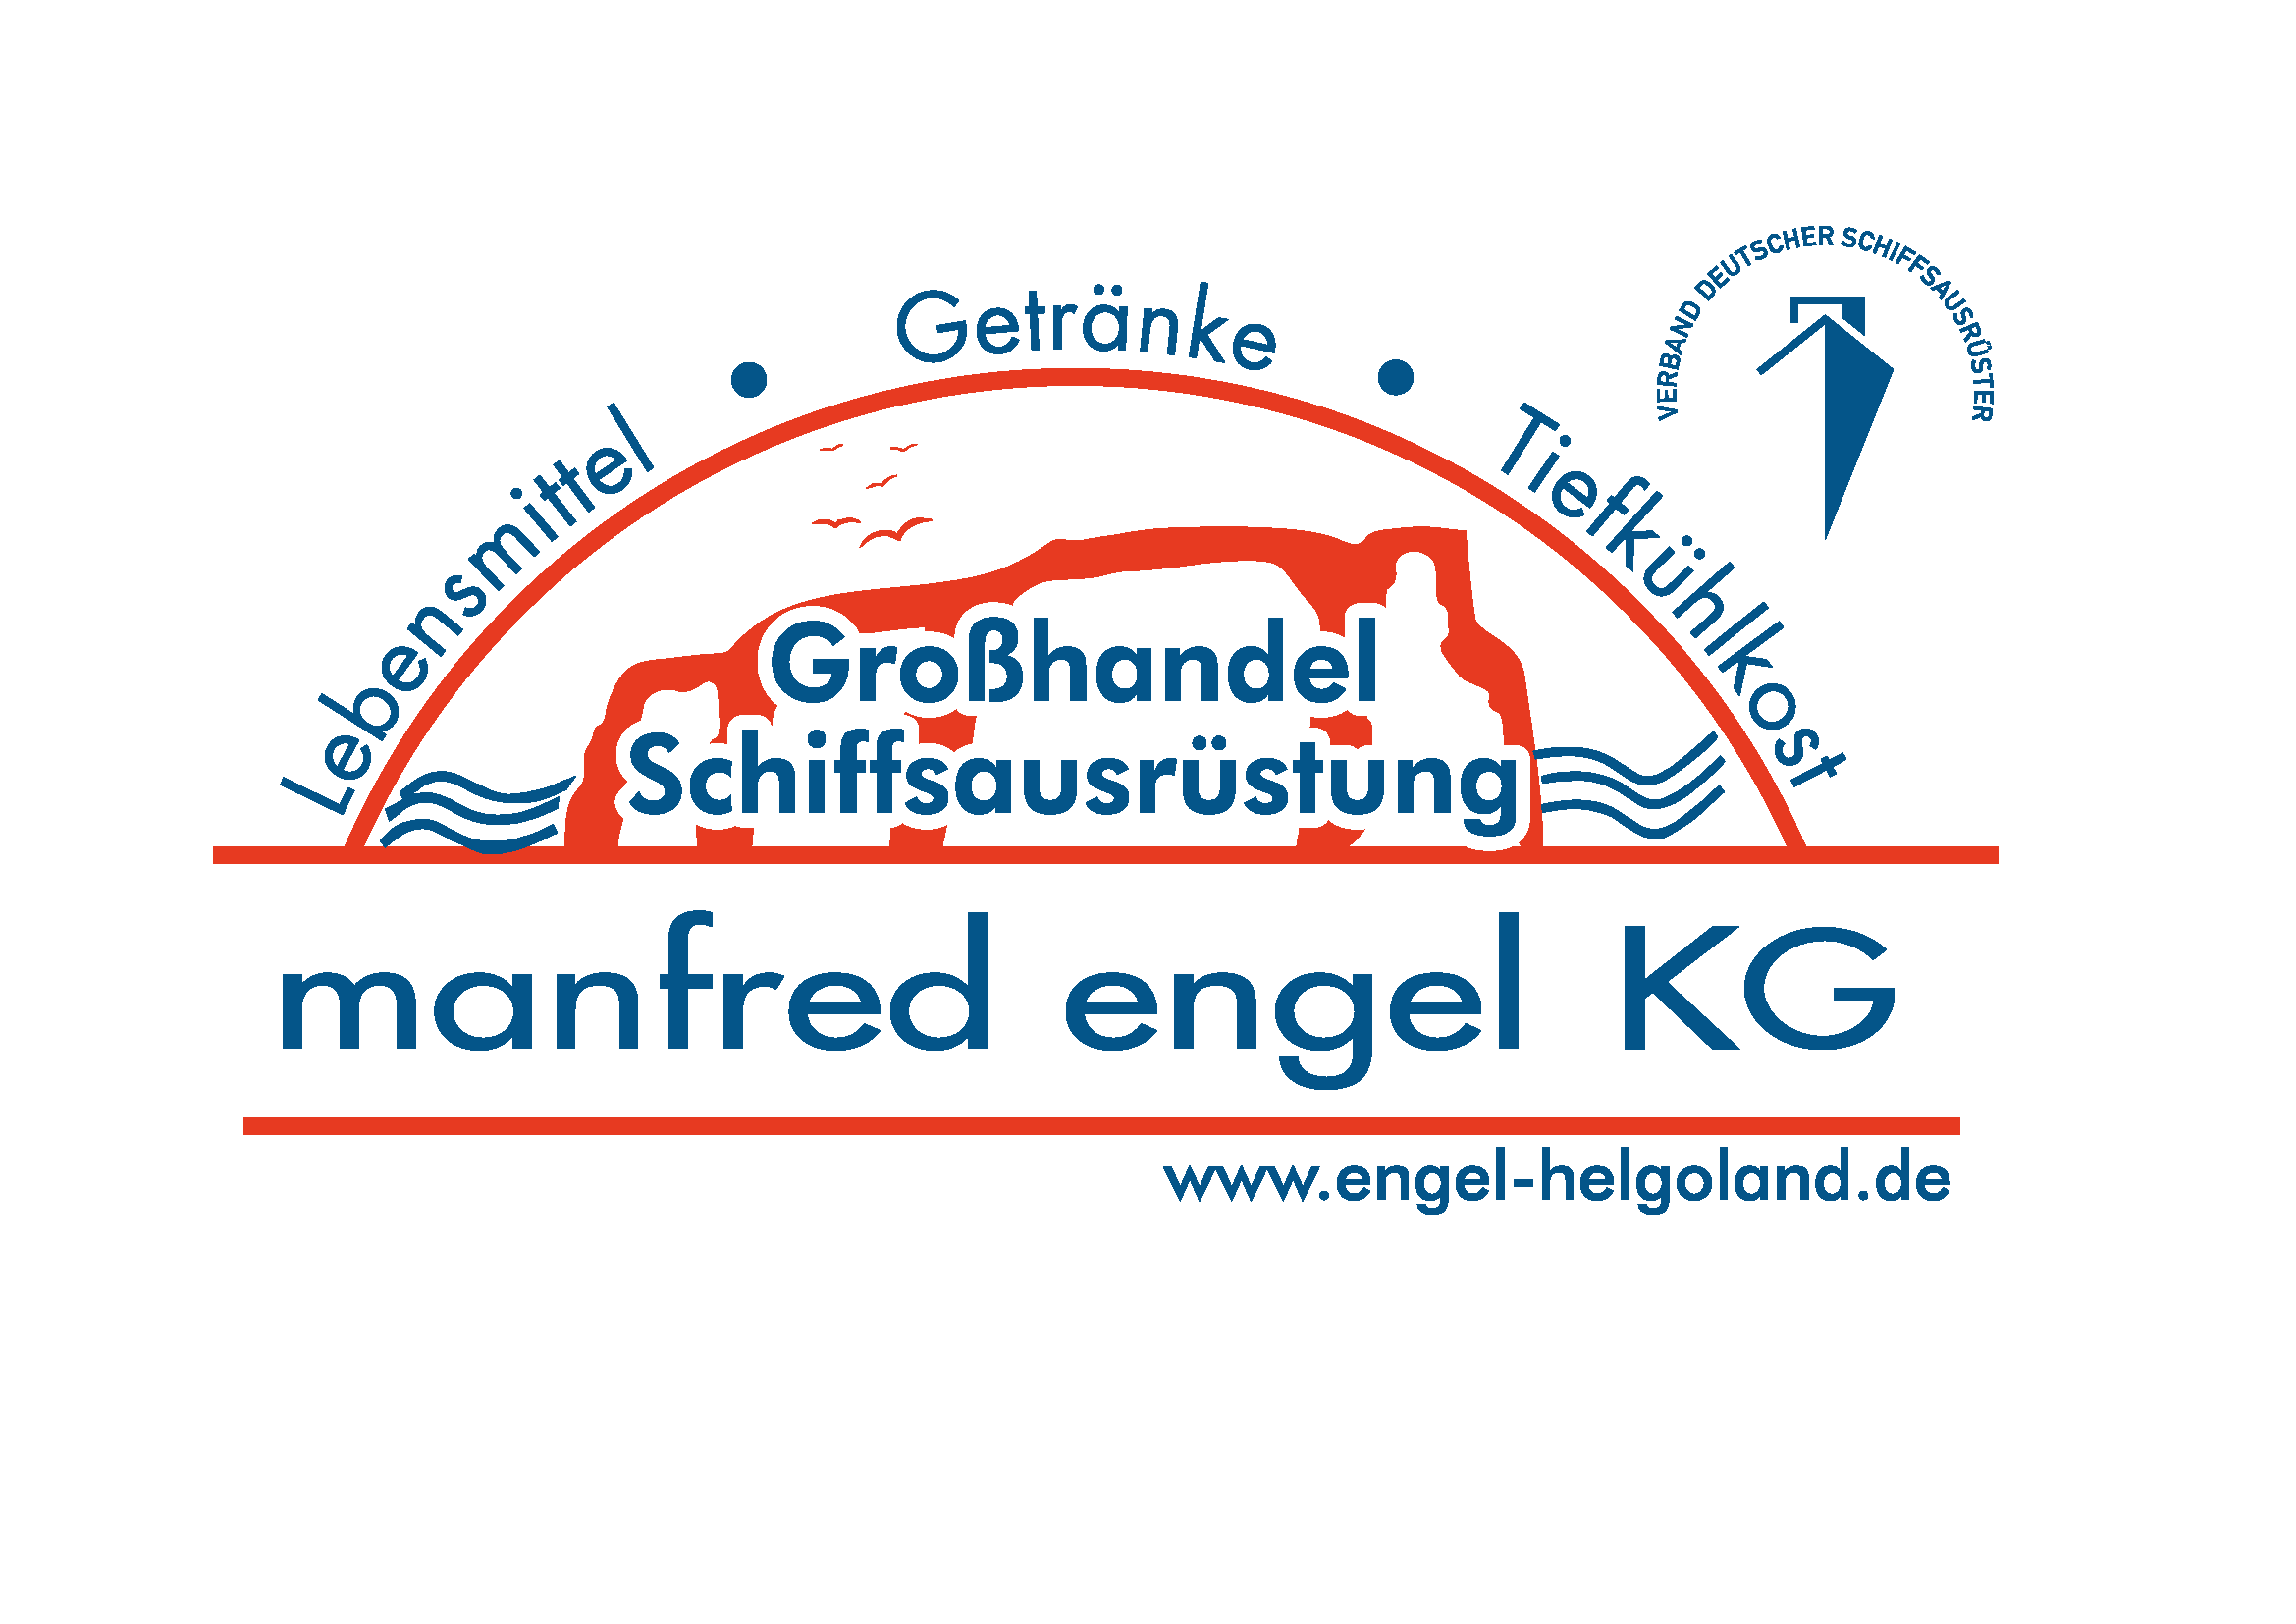 Manfred Engel KG